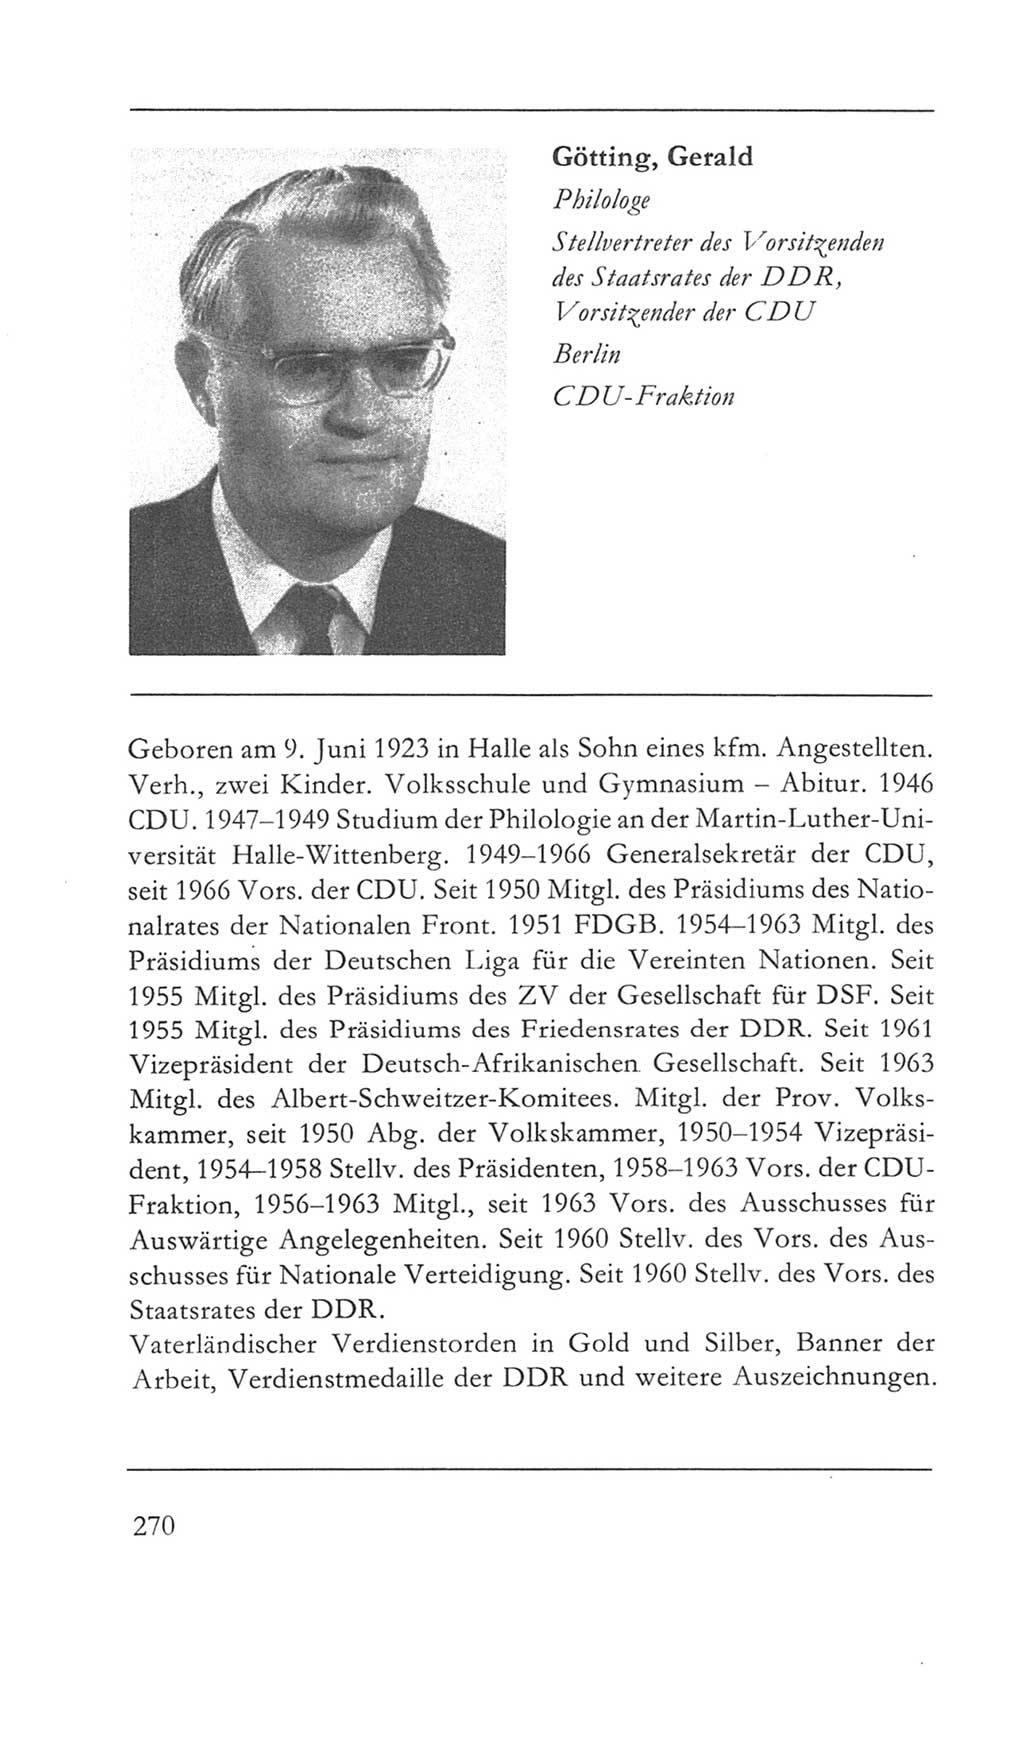 Volkskammer (VK) der Deutschen Demokratischen Republik (DDR) 5. Wahlperiode 1967-1971, Seite 270 (VK. DDR 5. WP. 1967-1971, S. 270)